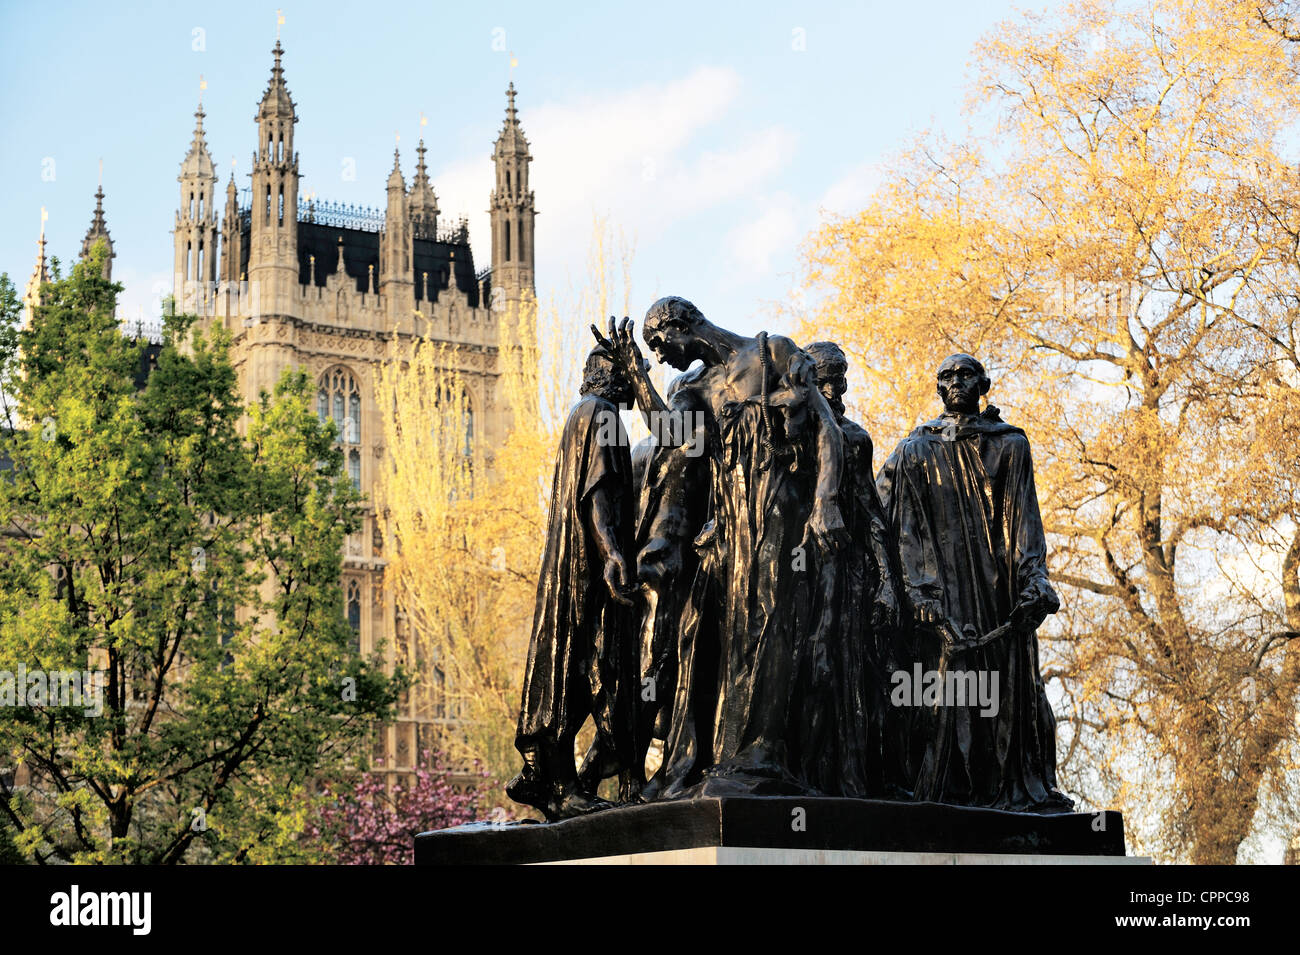 Los burgueses de Calais. Estatua de Rodin en Victoria Tower Gardens, Westminster, Londres. Muestra el episodio de la guerra de los Cien Años Foto de stock